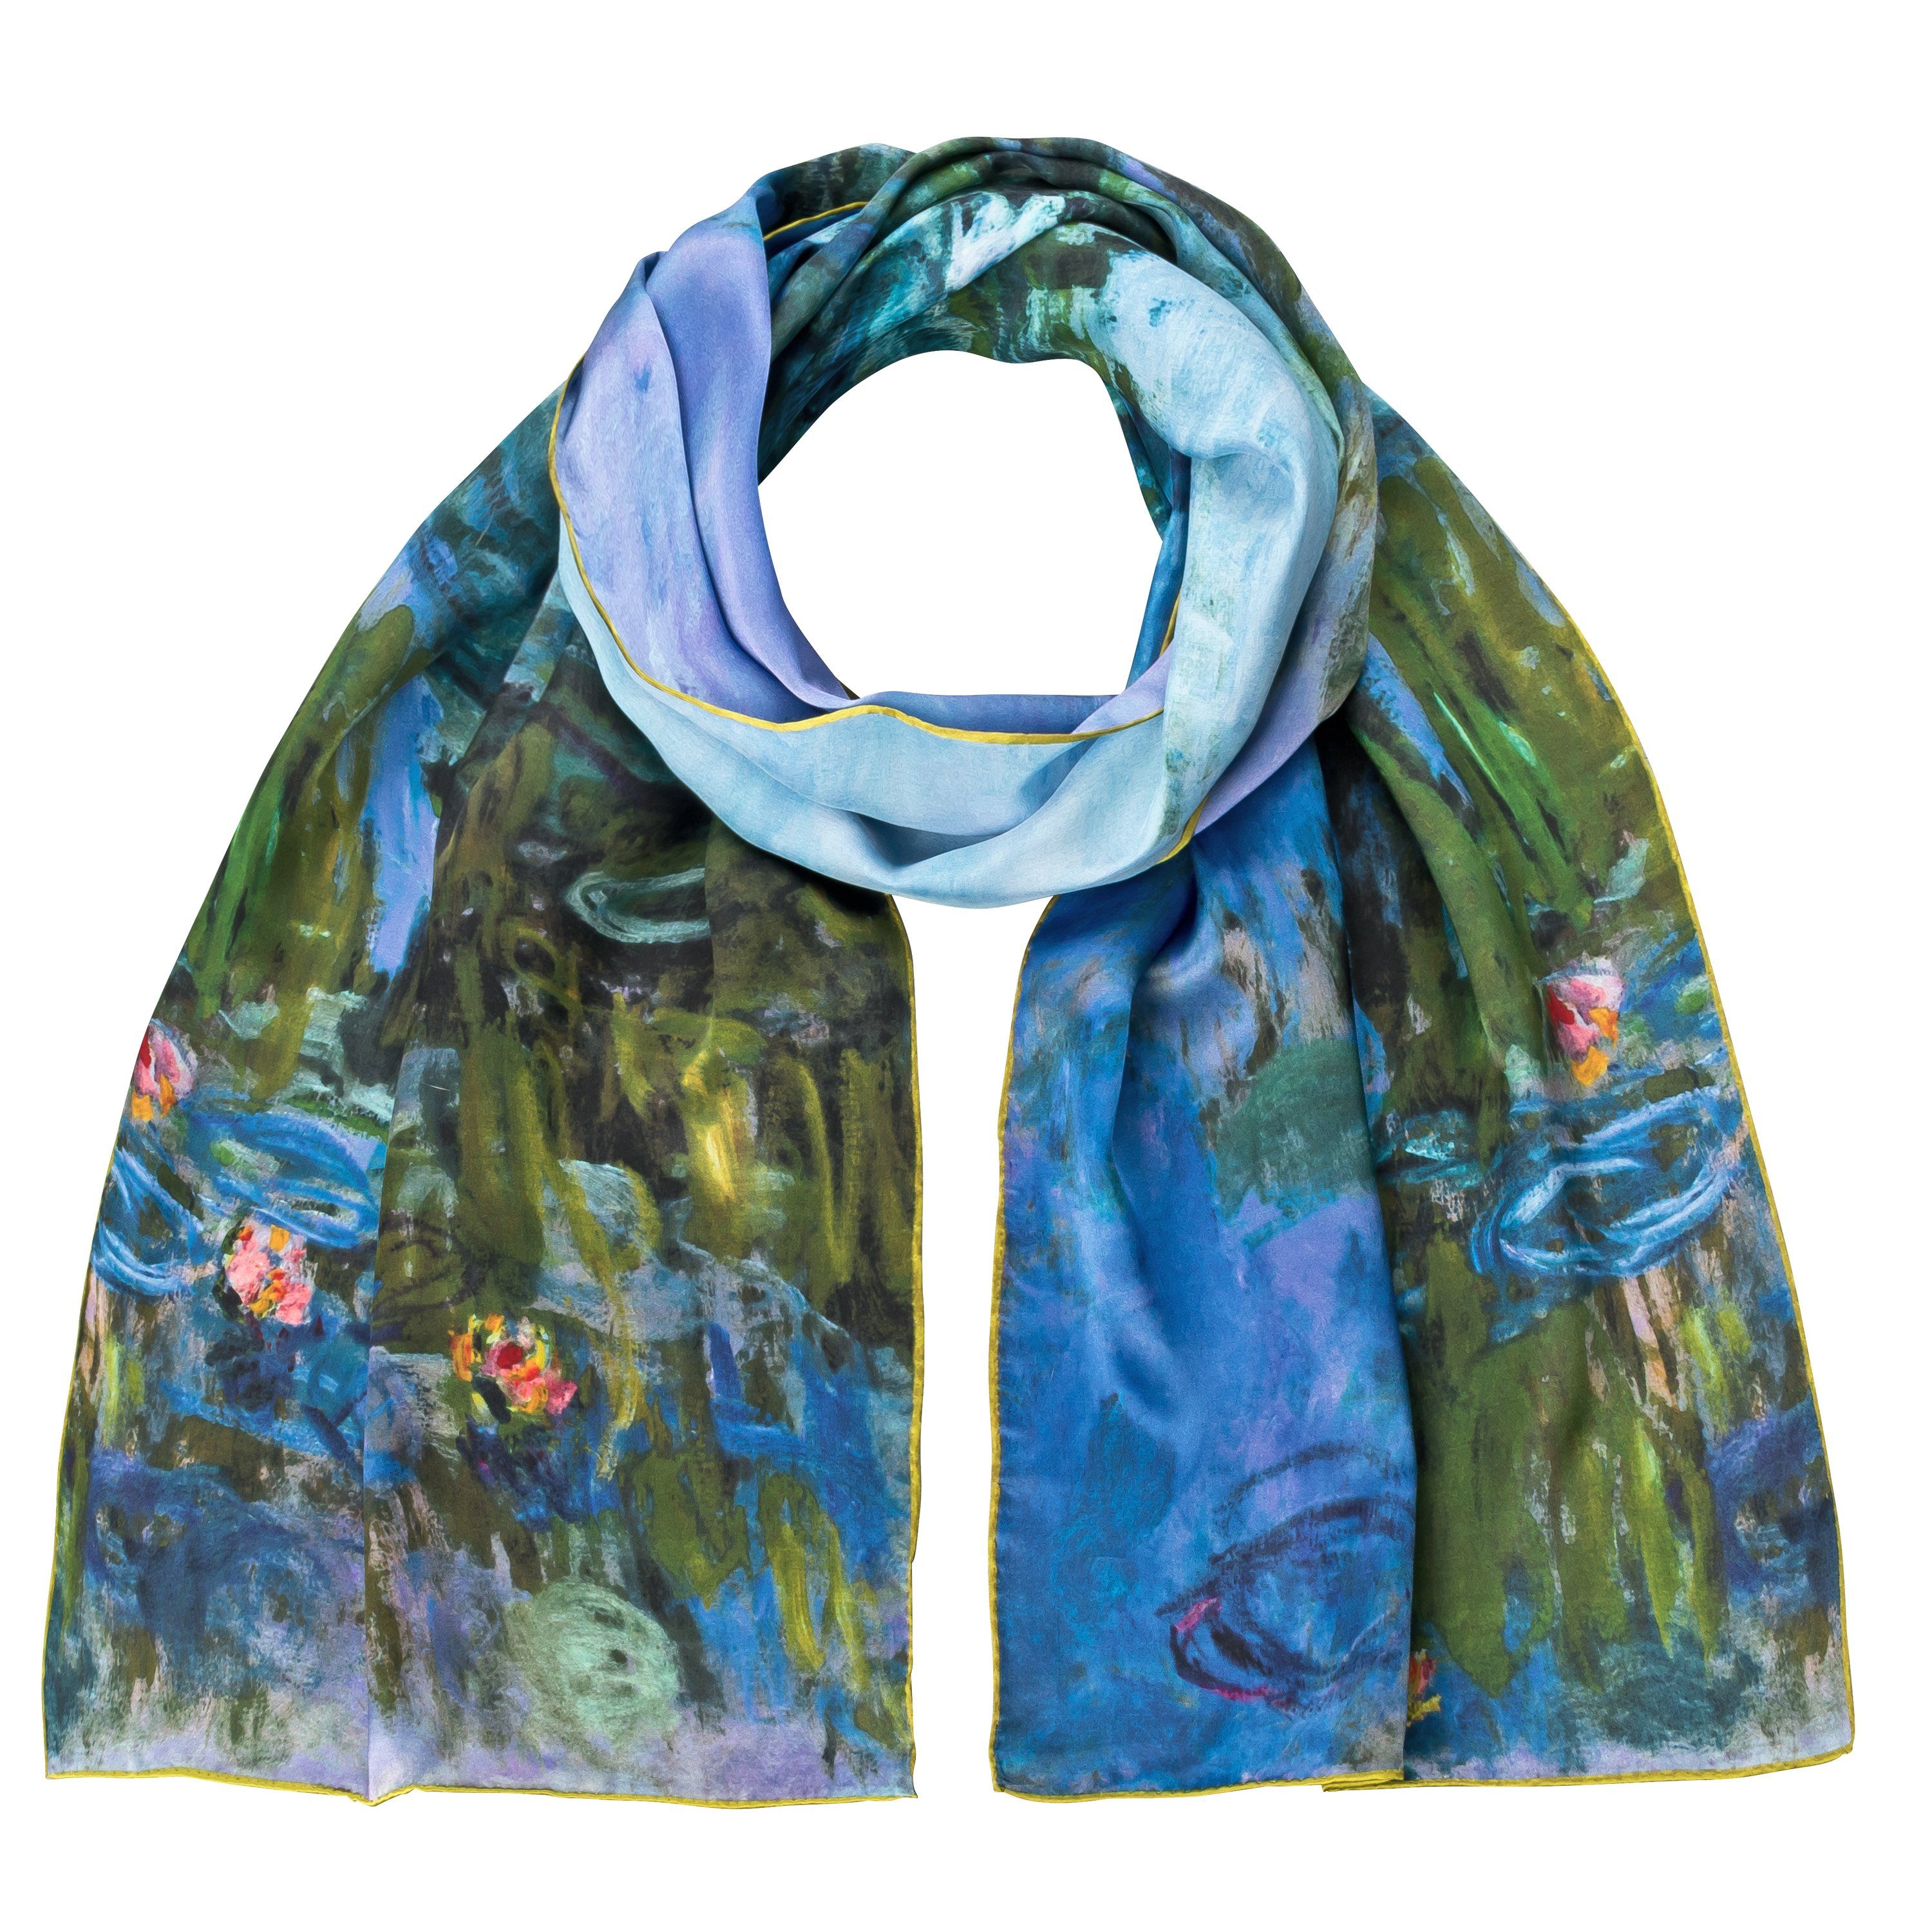 von Lilienfeld Seidenschal Schal 100% Seide Claude Monet Seerosen Kunst 172 x 42 cm, reine Seide